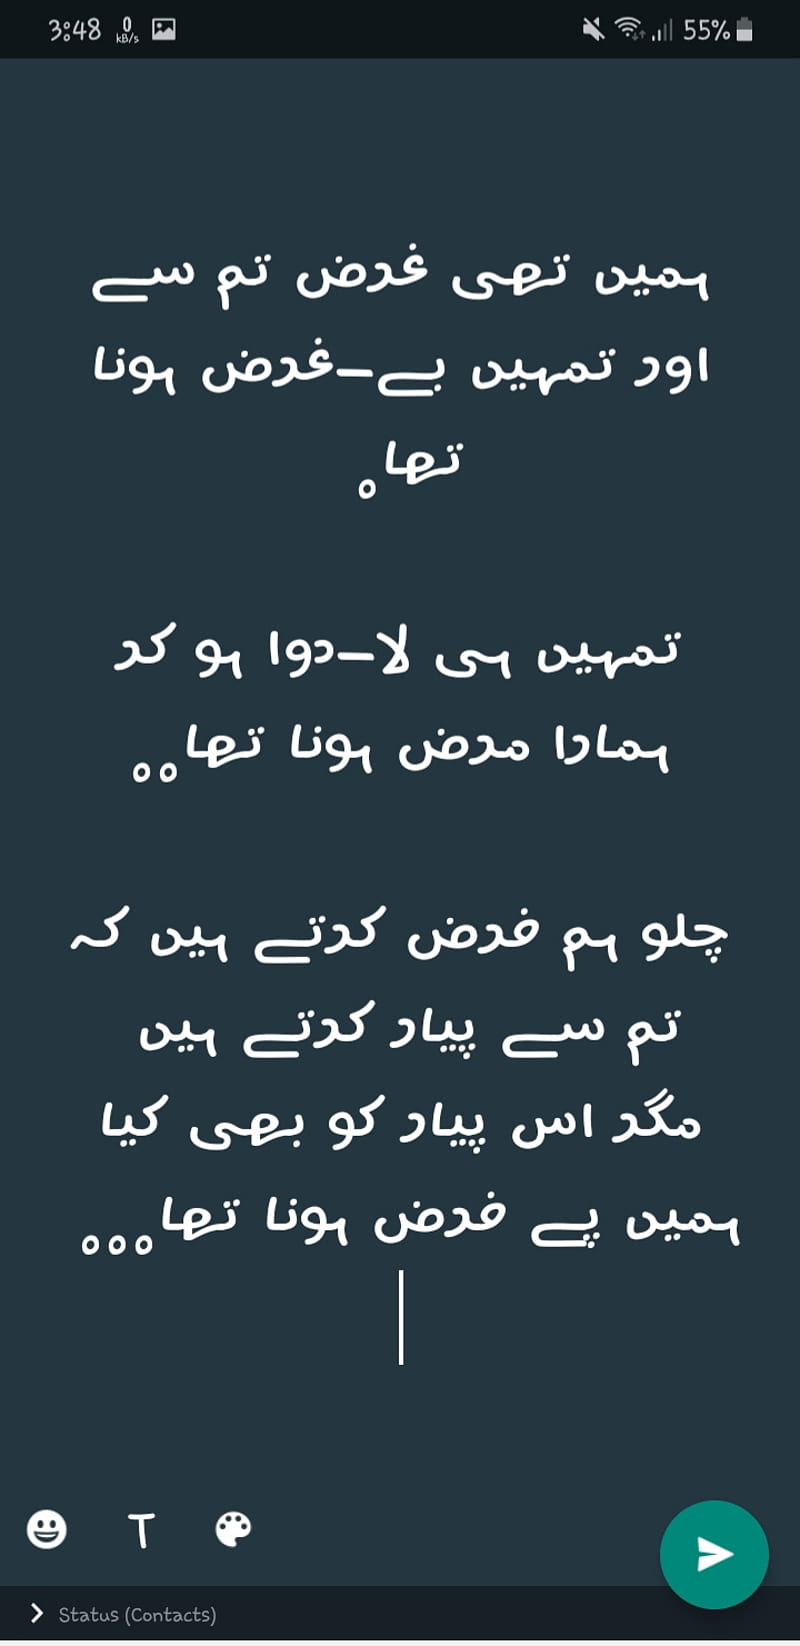 sad urdu poetry for broken hearts